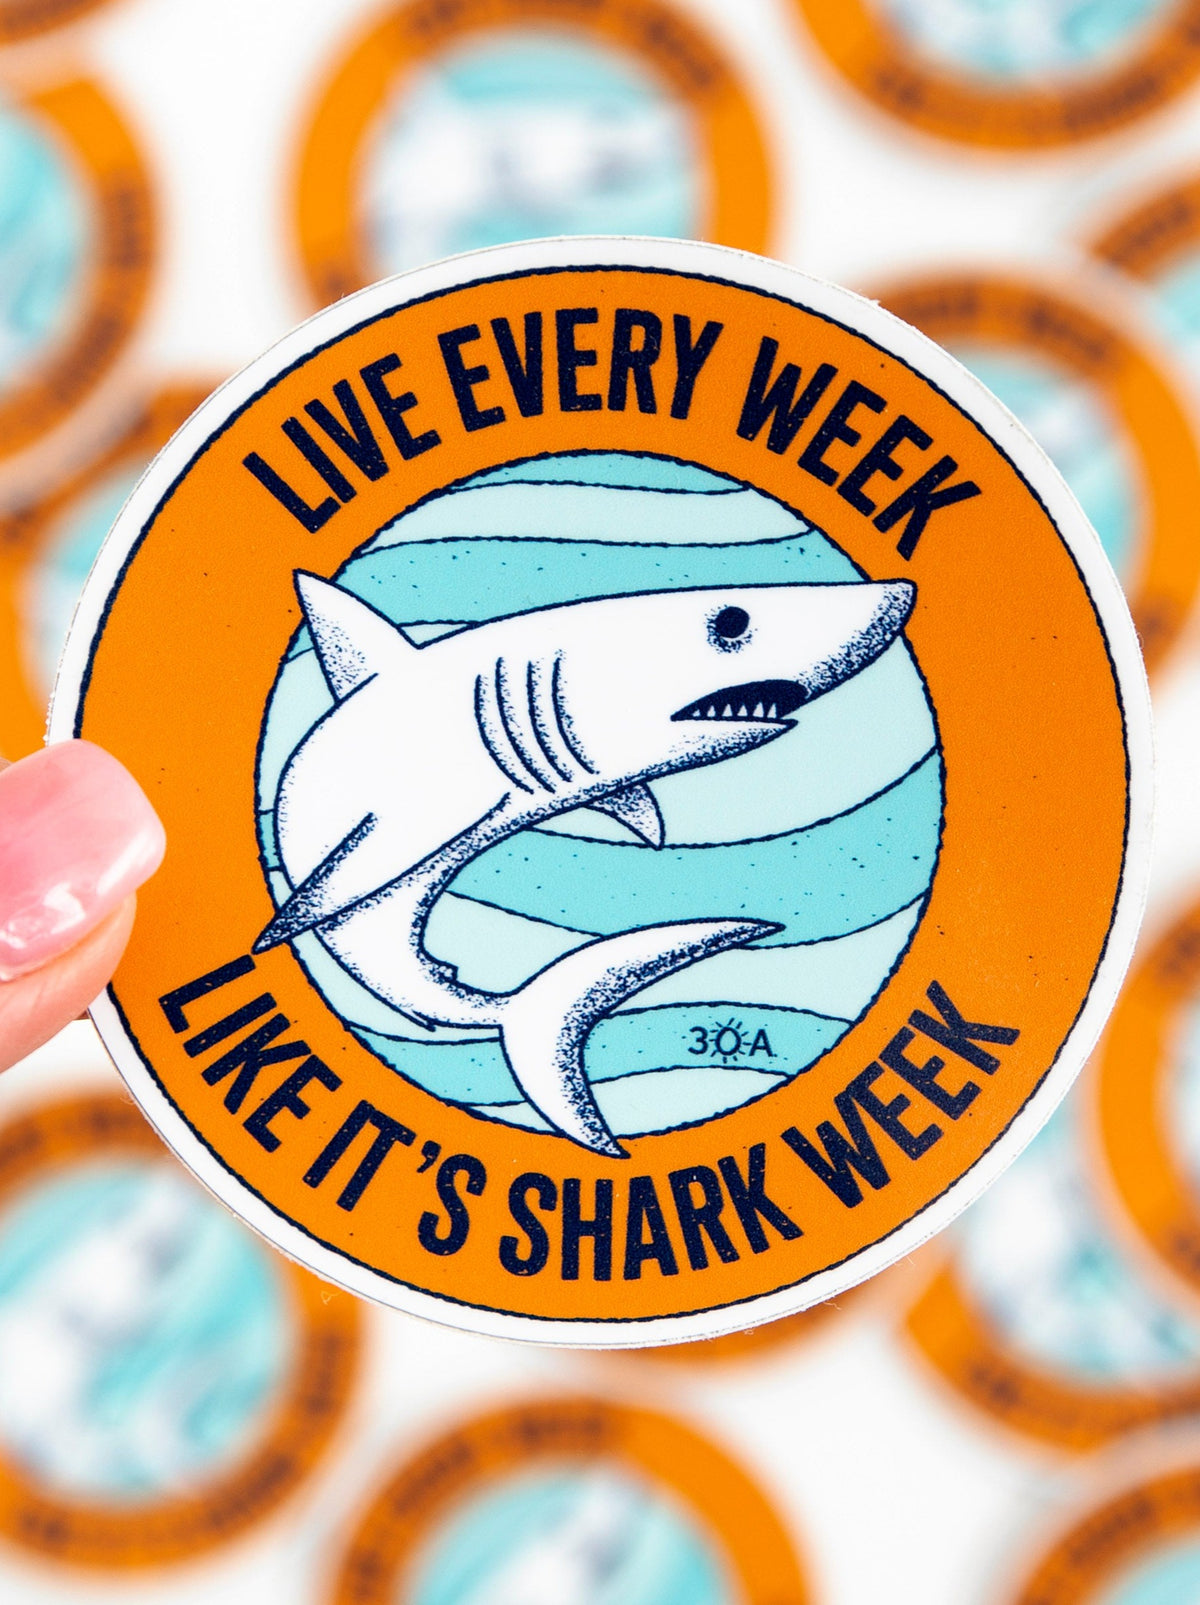 30A Shark Week Decal